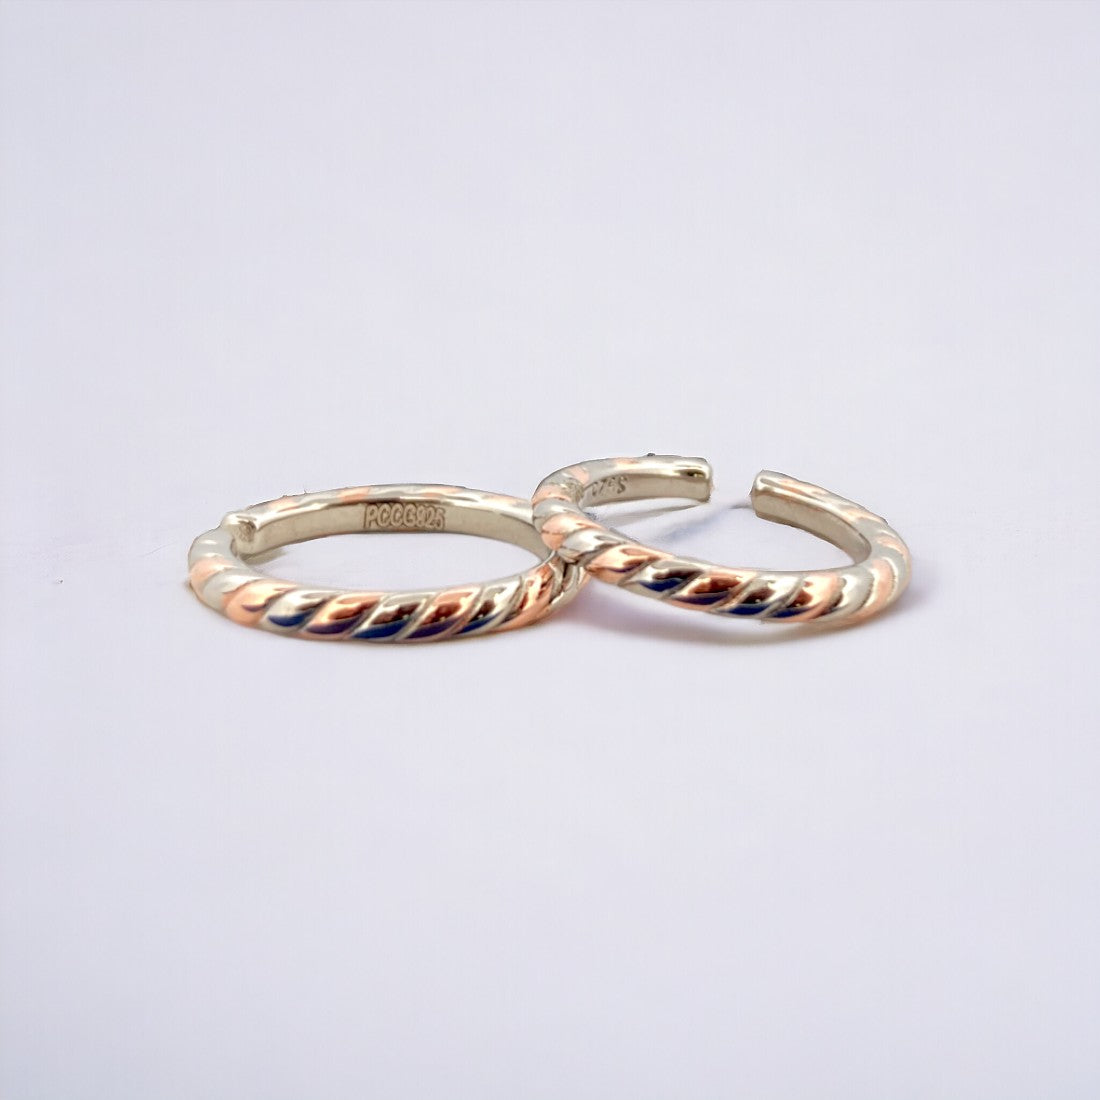 Binding Rose gold-Silver Toe Ring